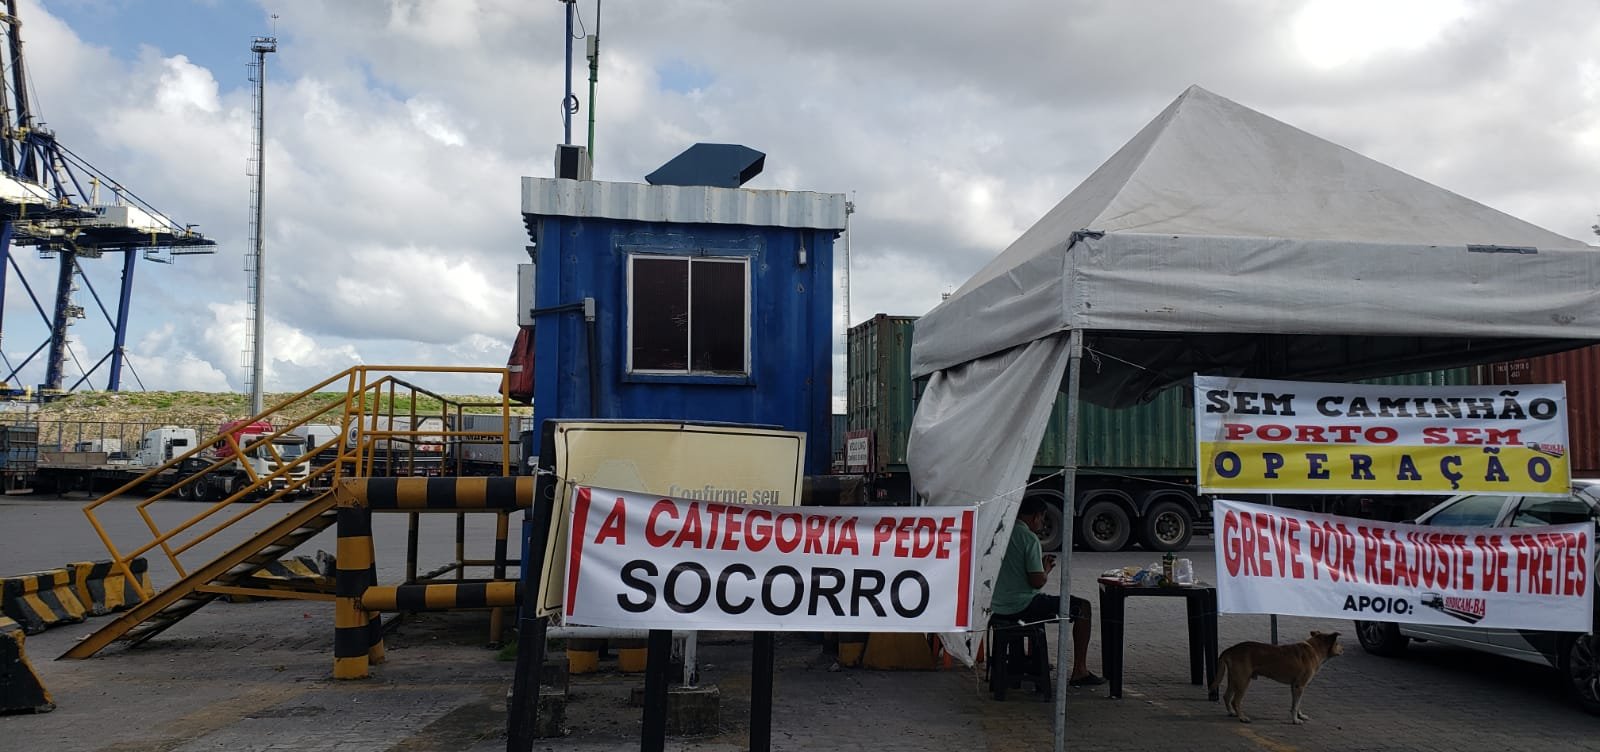 manifestação dos caminhoneiros na Bahia tem apenas placas e não há retenção nas estradas